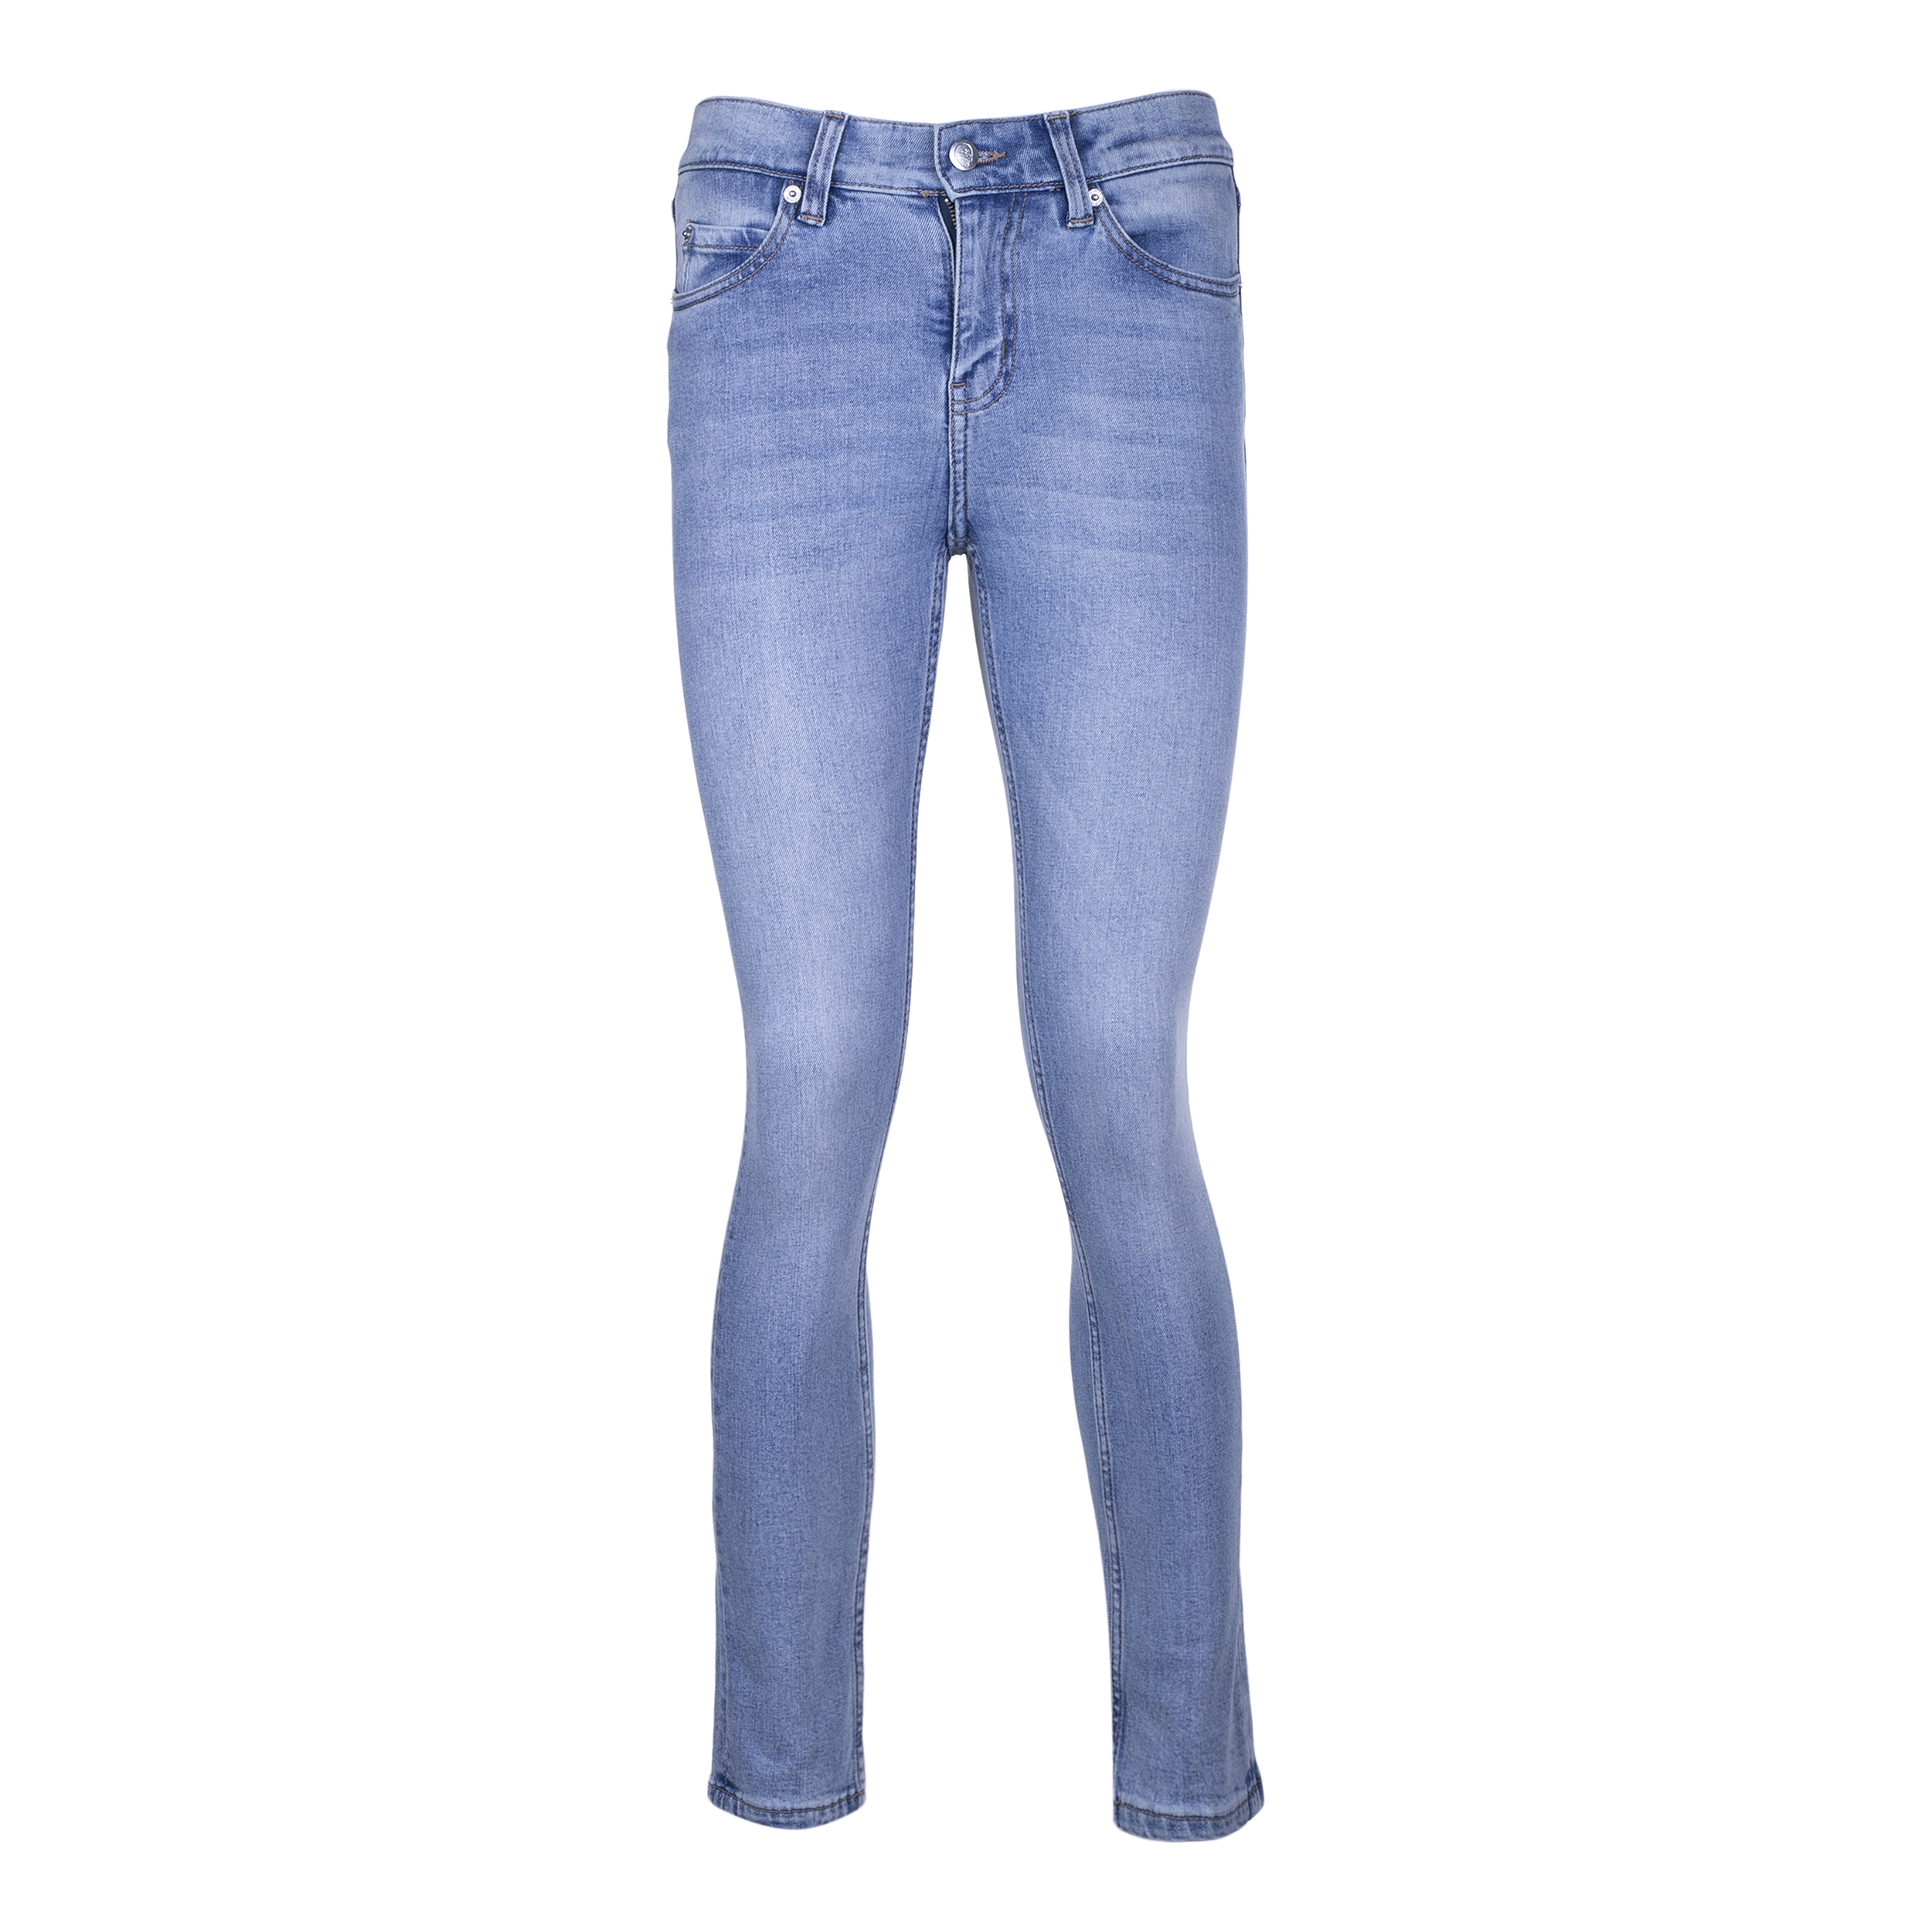 نکته خرید - قیمت روز شلوار جین زنانه ویکدی مدل 0207463 خرید